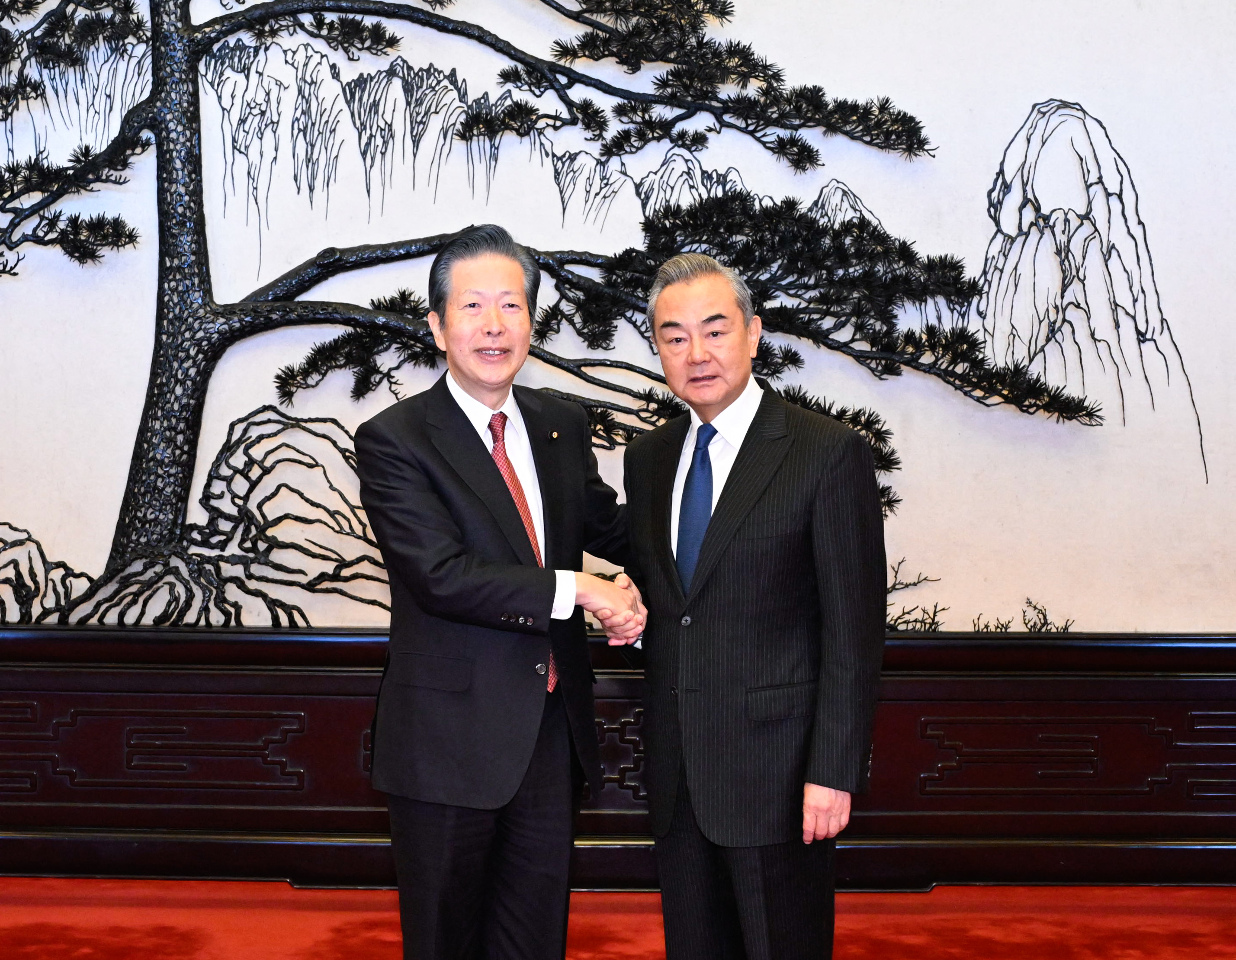 日本公明黨主席會中國外長王毅 同意持續對話